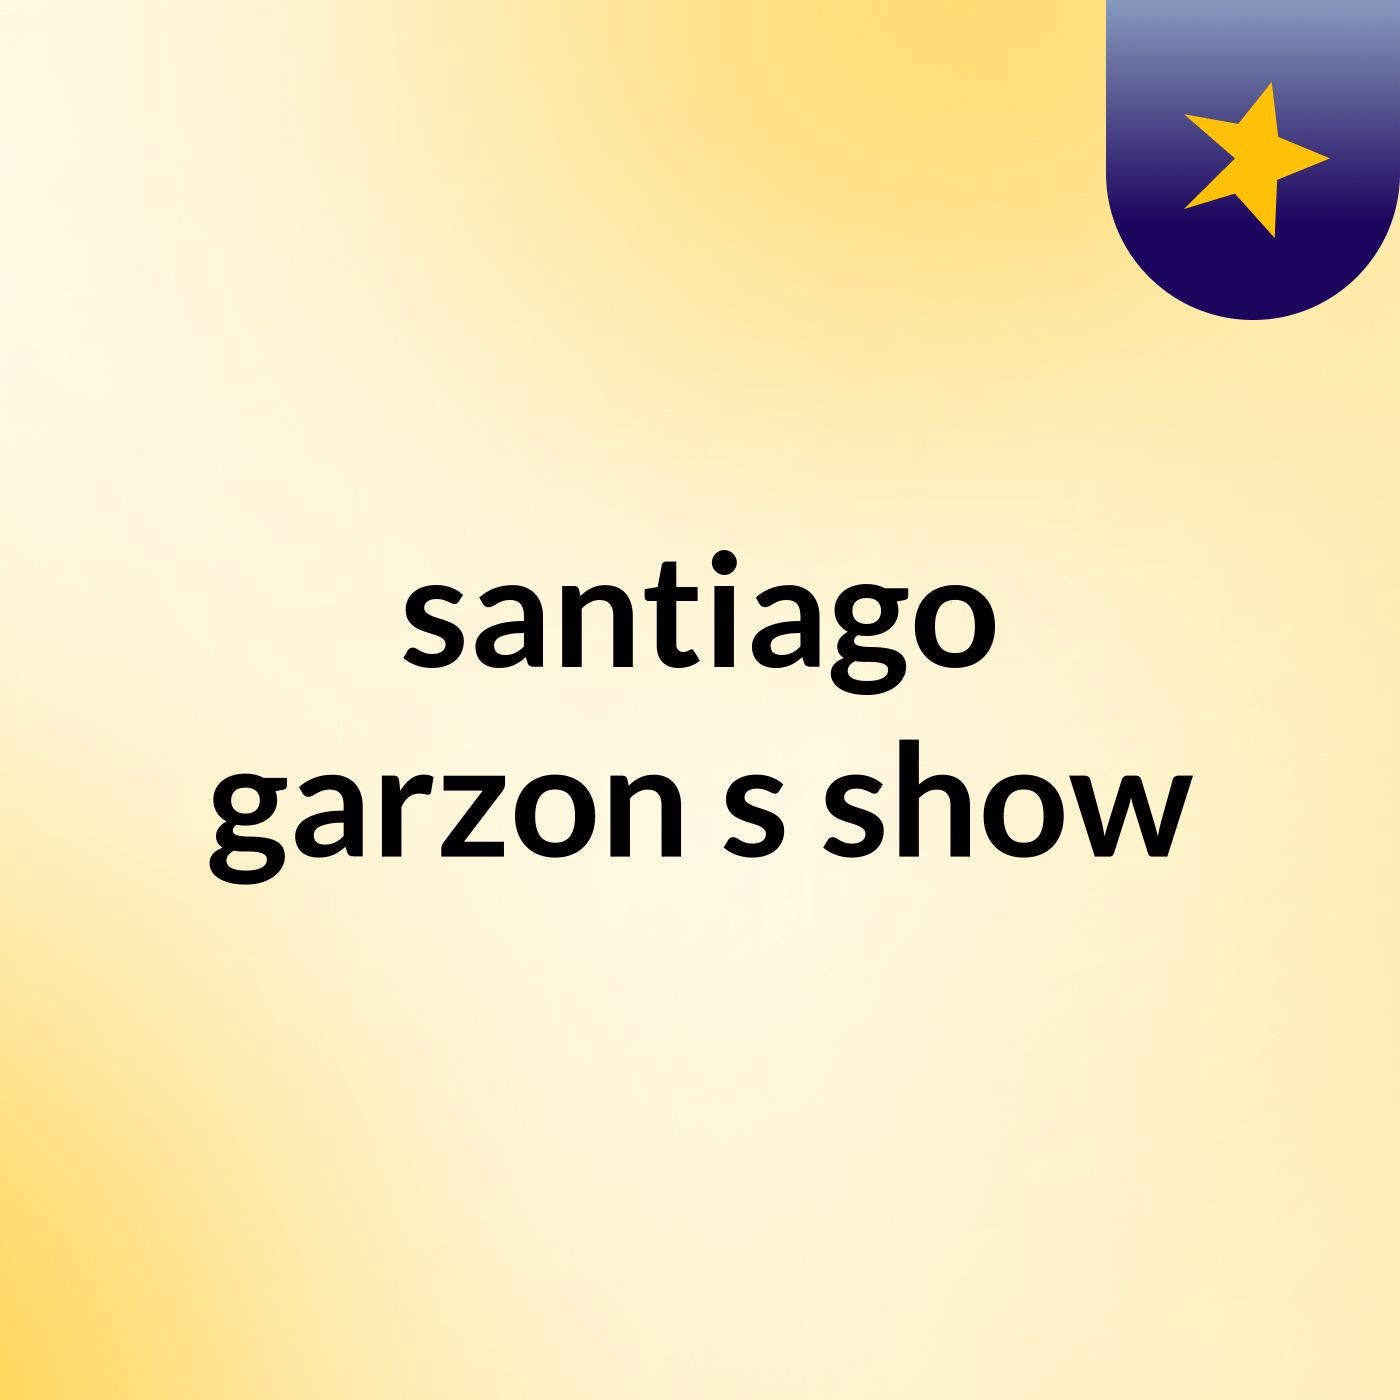 santiago garzon's show